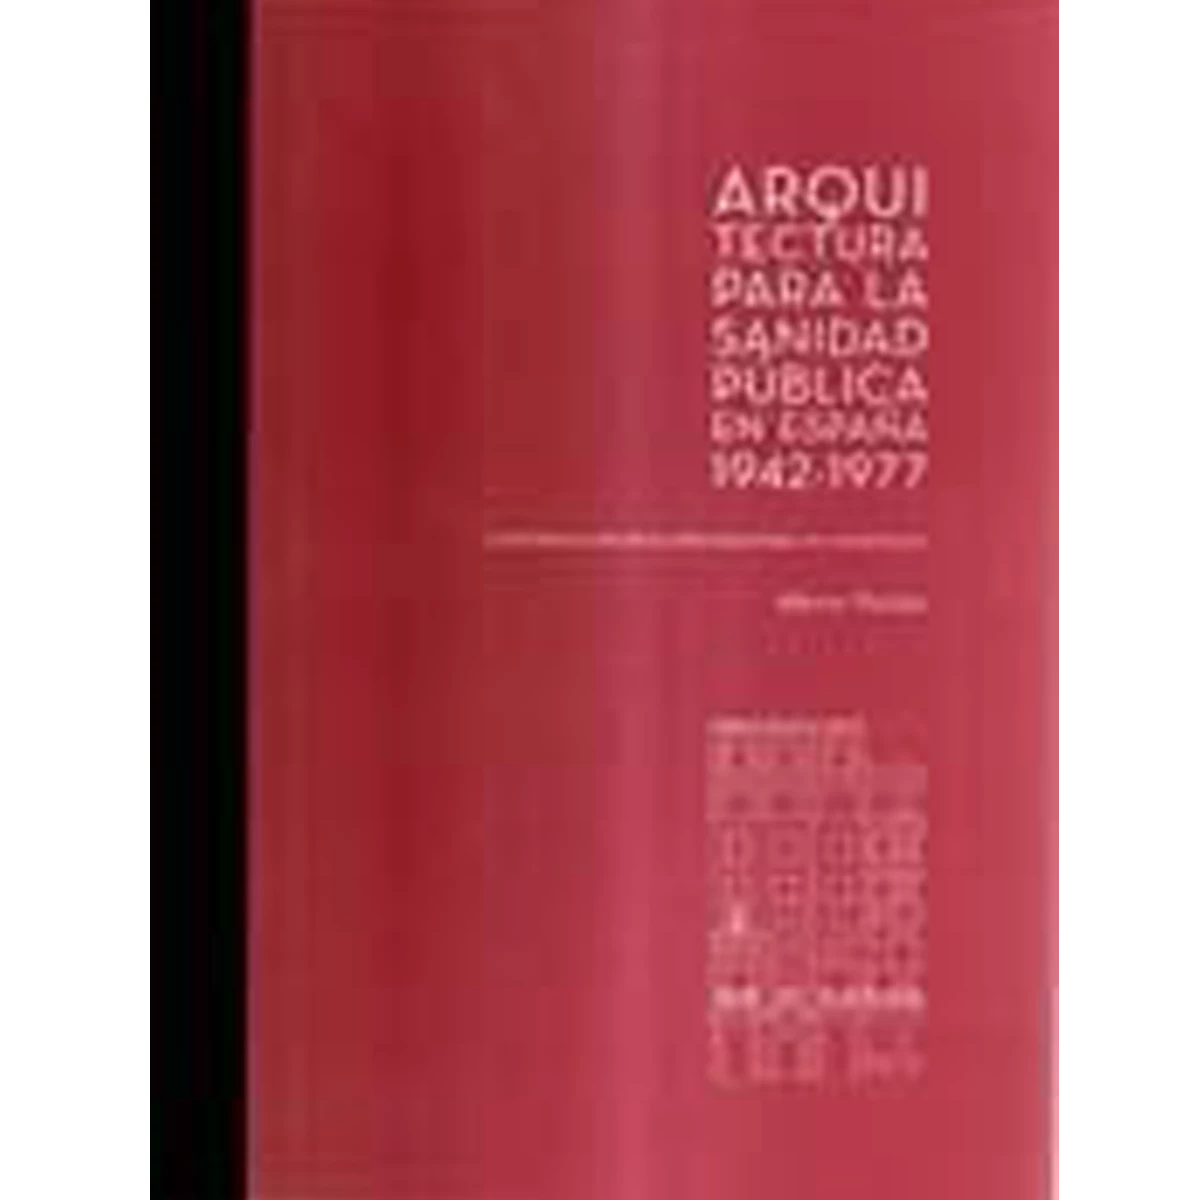 Arquitectura para la Sanidad Pública en España, 1942-1977